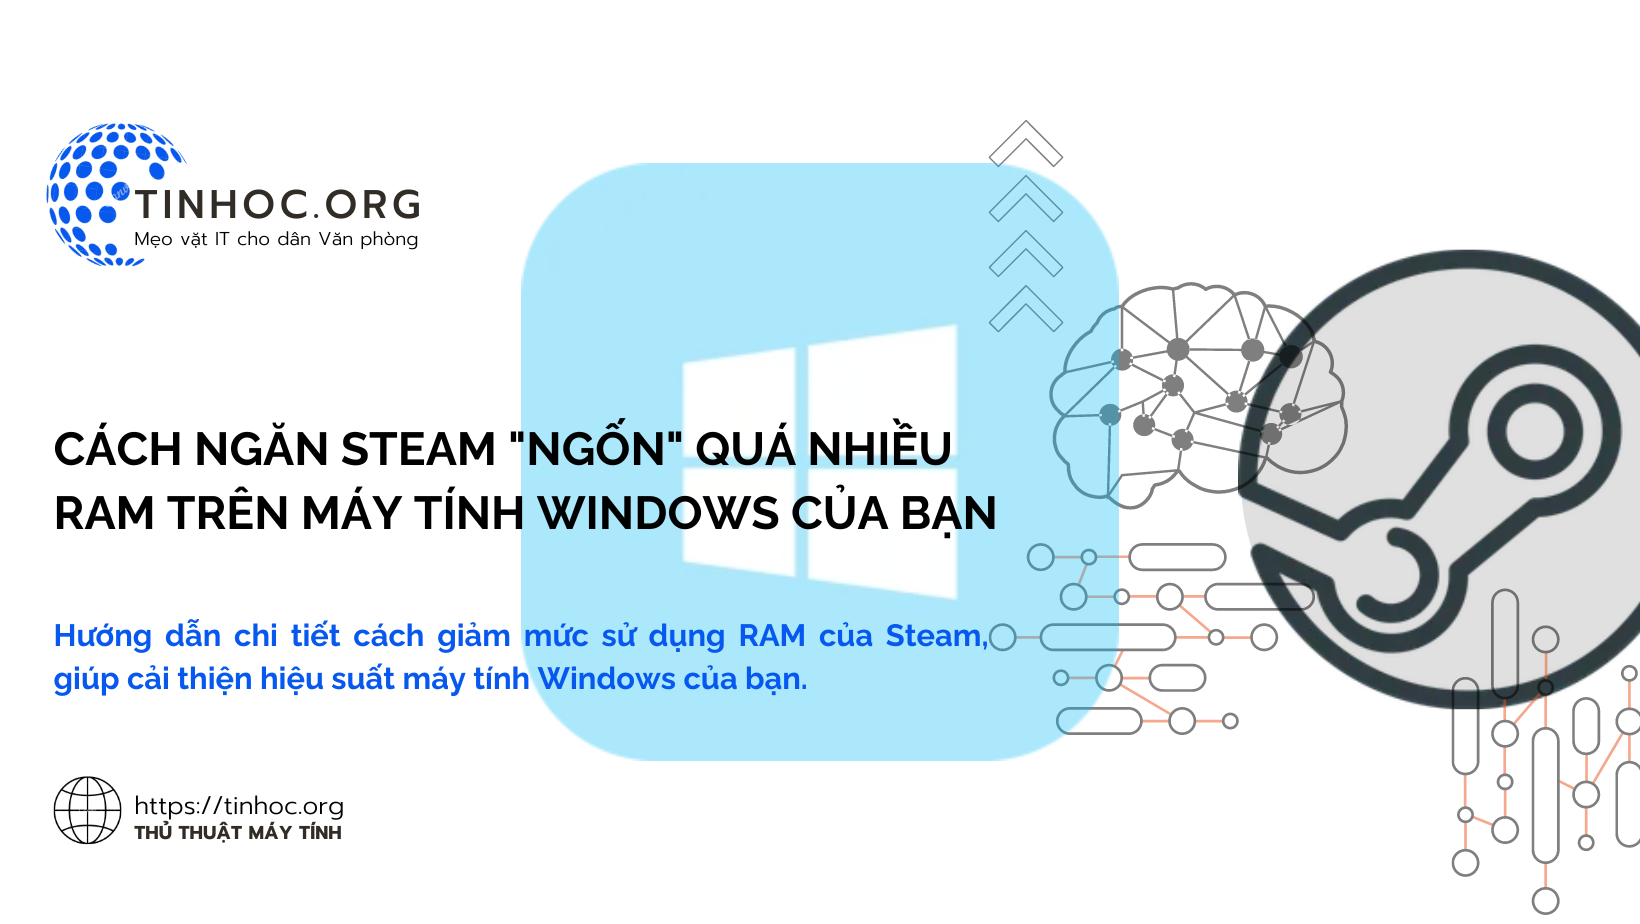 Hướng dẫn chi tiết cách giảm mức sử dụng RAM của Steam, giúp cải thiện hiệu suất máy tính Windows của bạn.